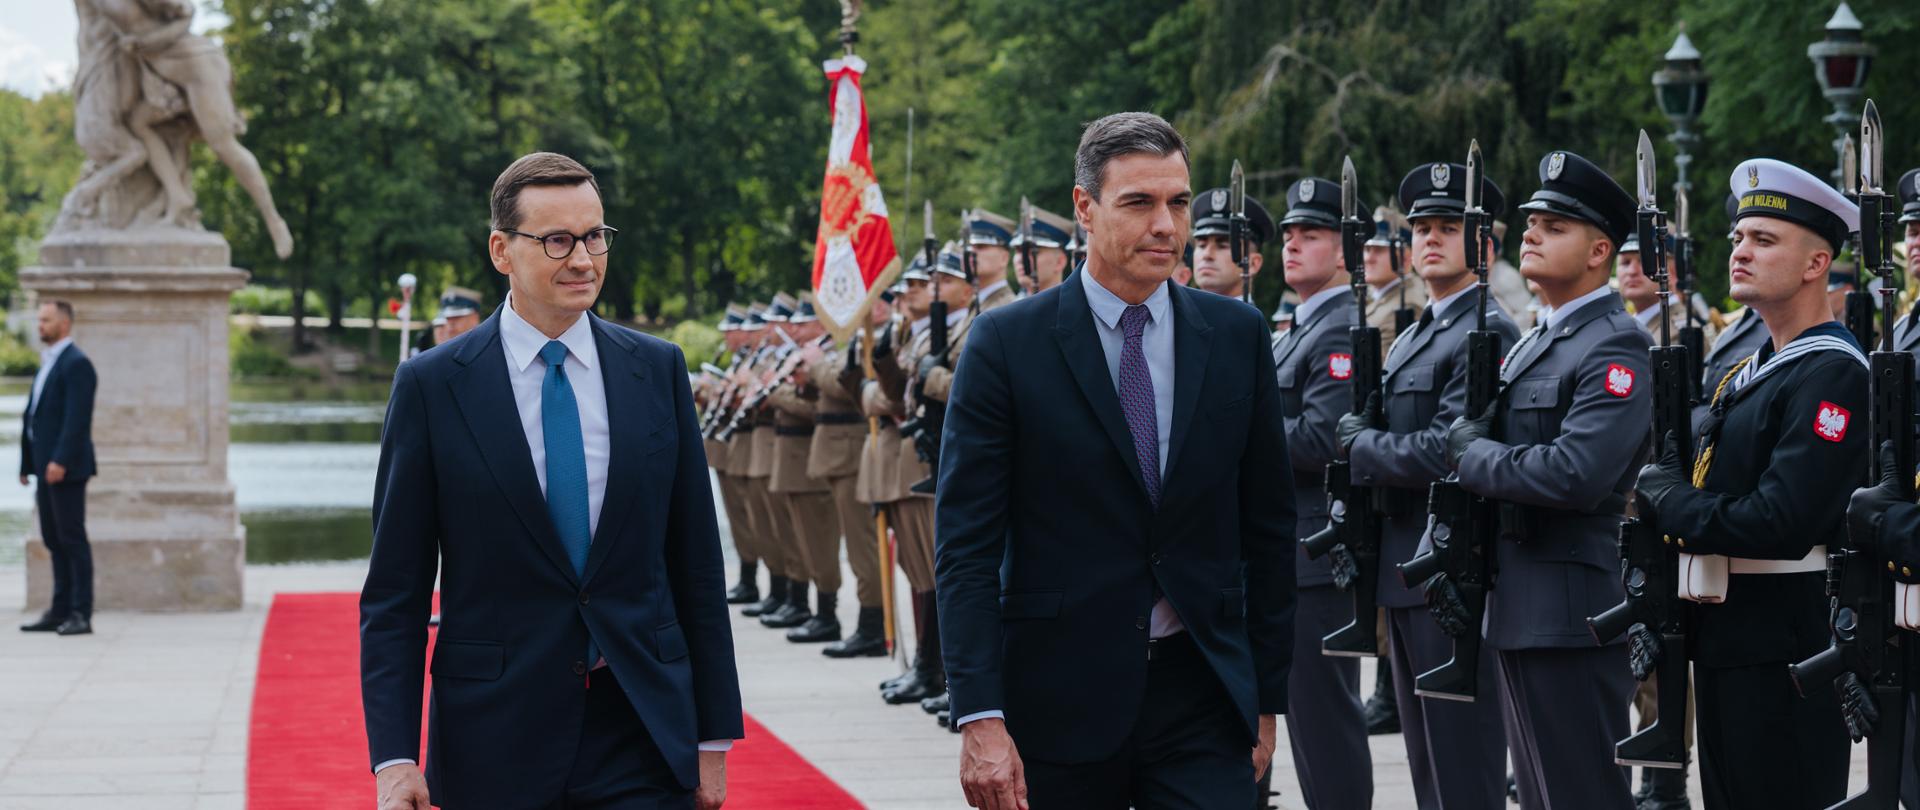 Premier oraz premier Hiszpanii idą, obok stoją żołnierze.